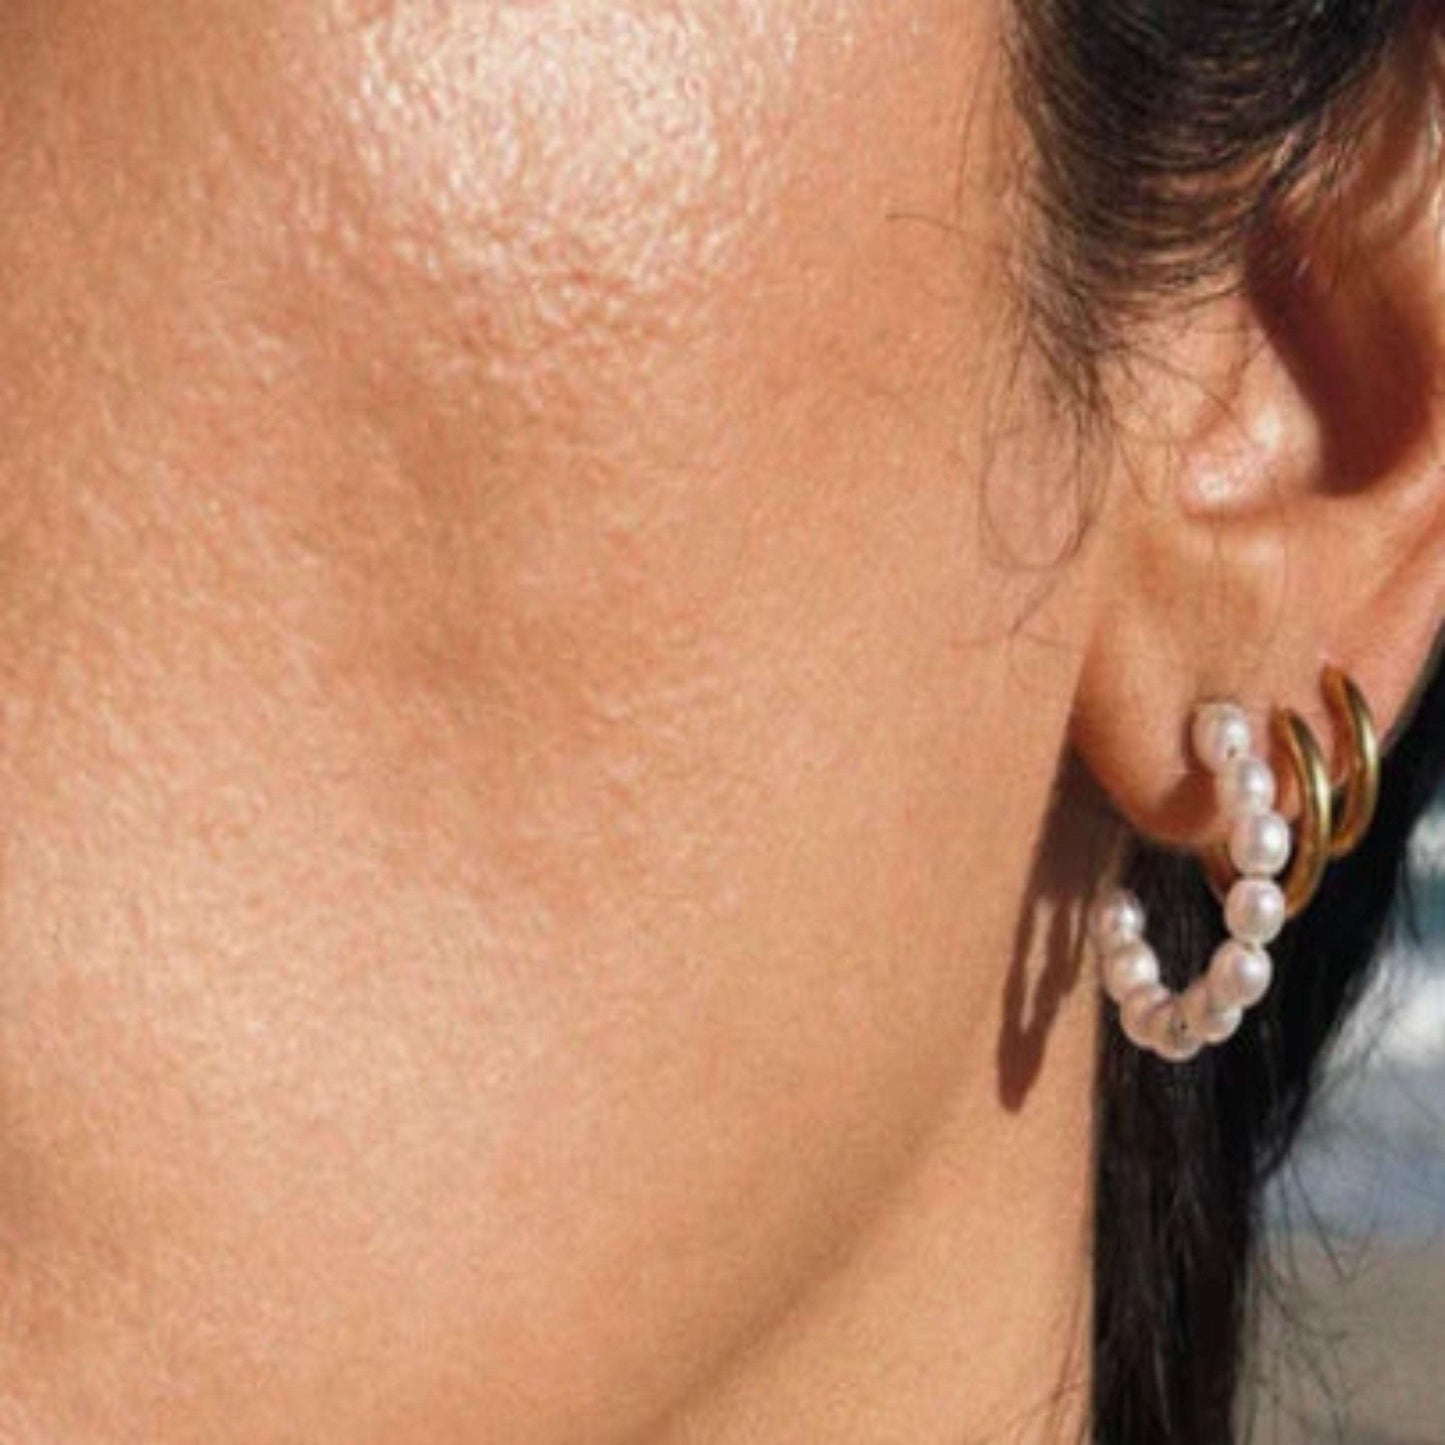 Pearl Hoop Earring - Kissed Jewellery